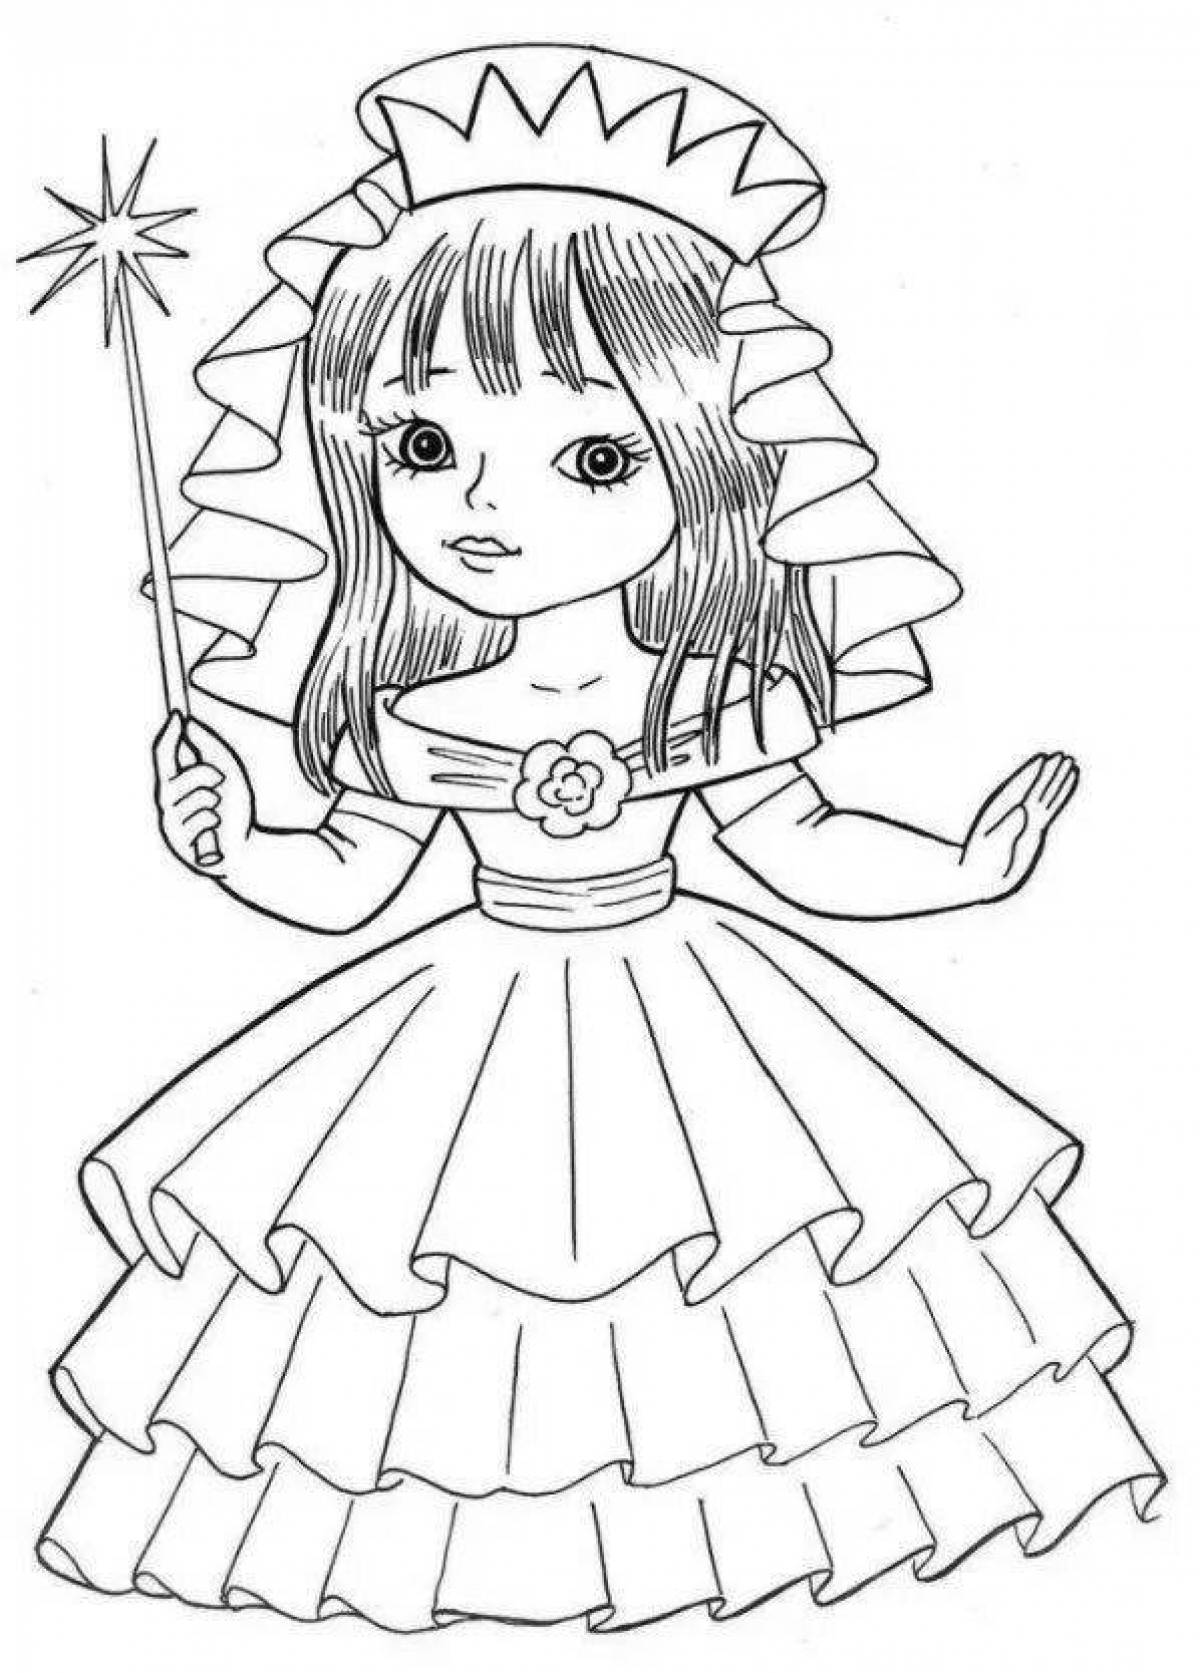 Charming princess doll coloring book